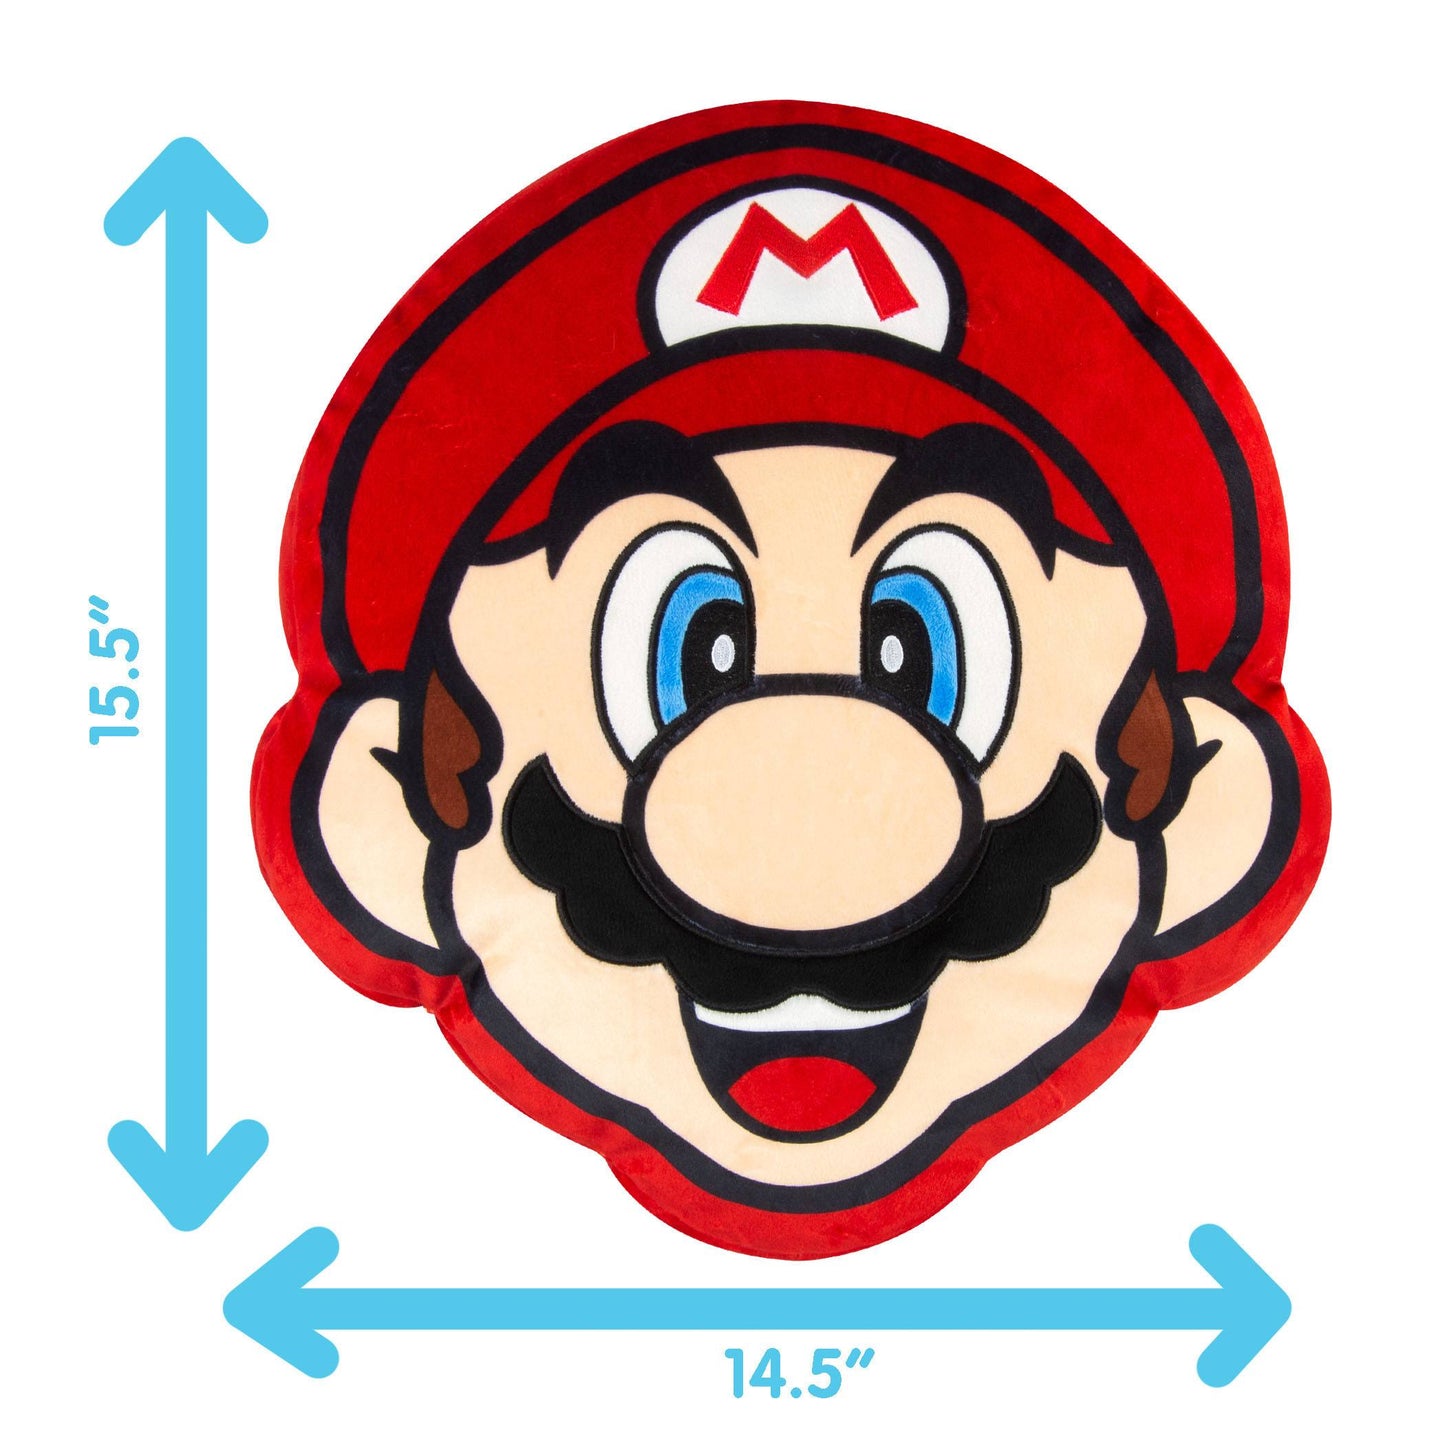 Super Mario Plüsch - Mario 